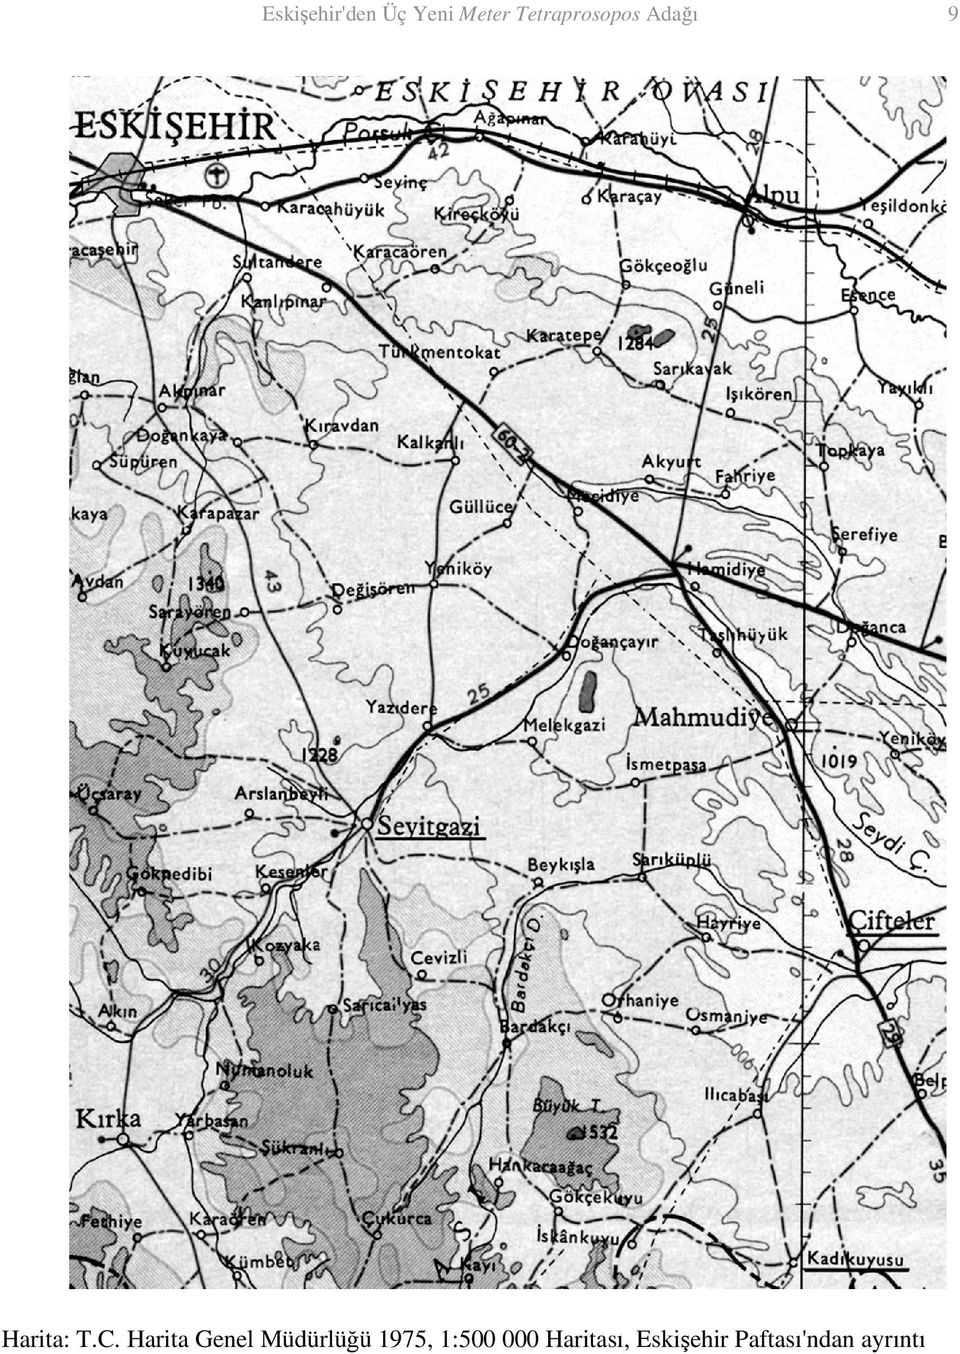 Harita Genel Müdürlüğü 1975, 1:500